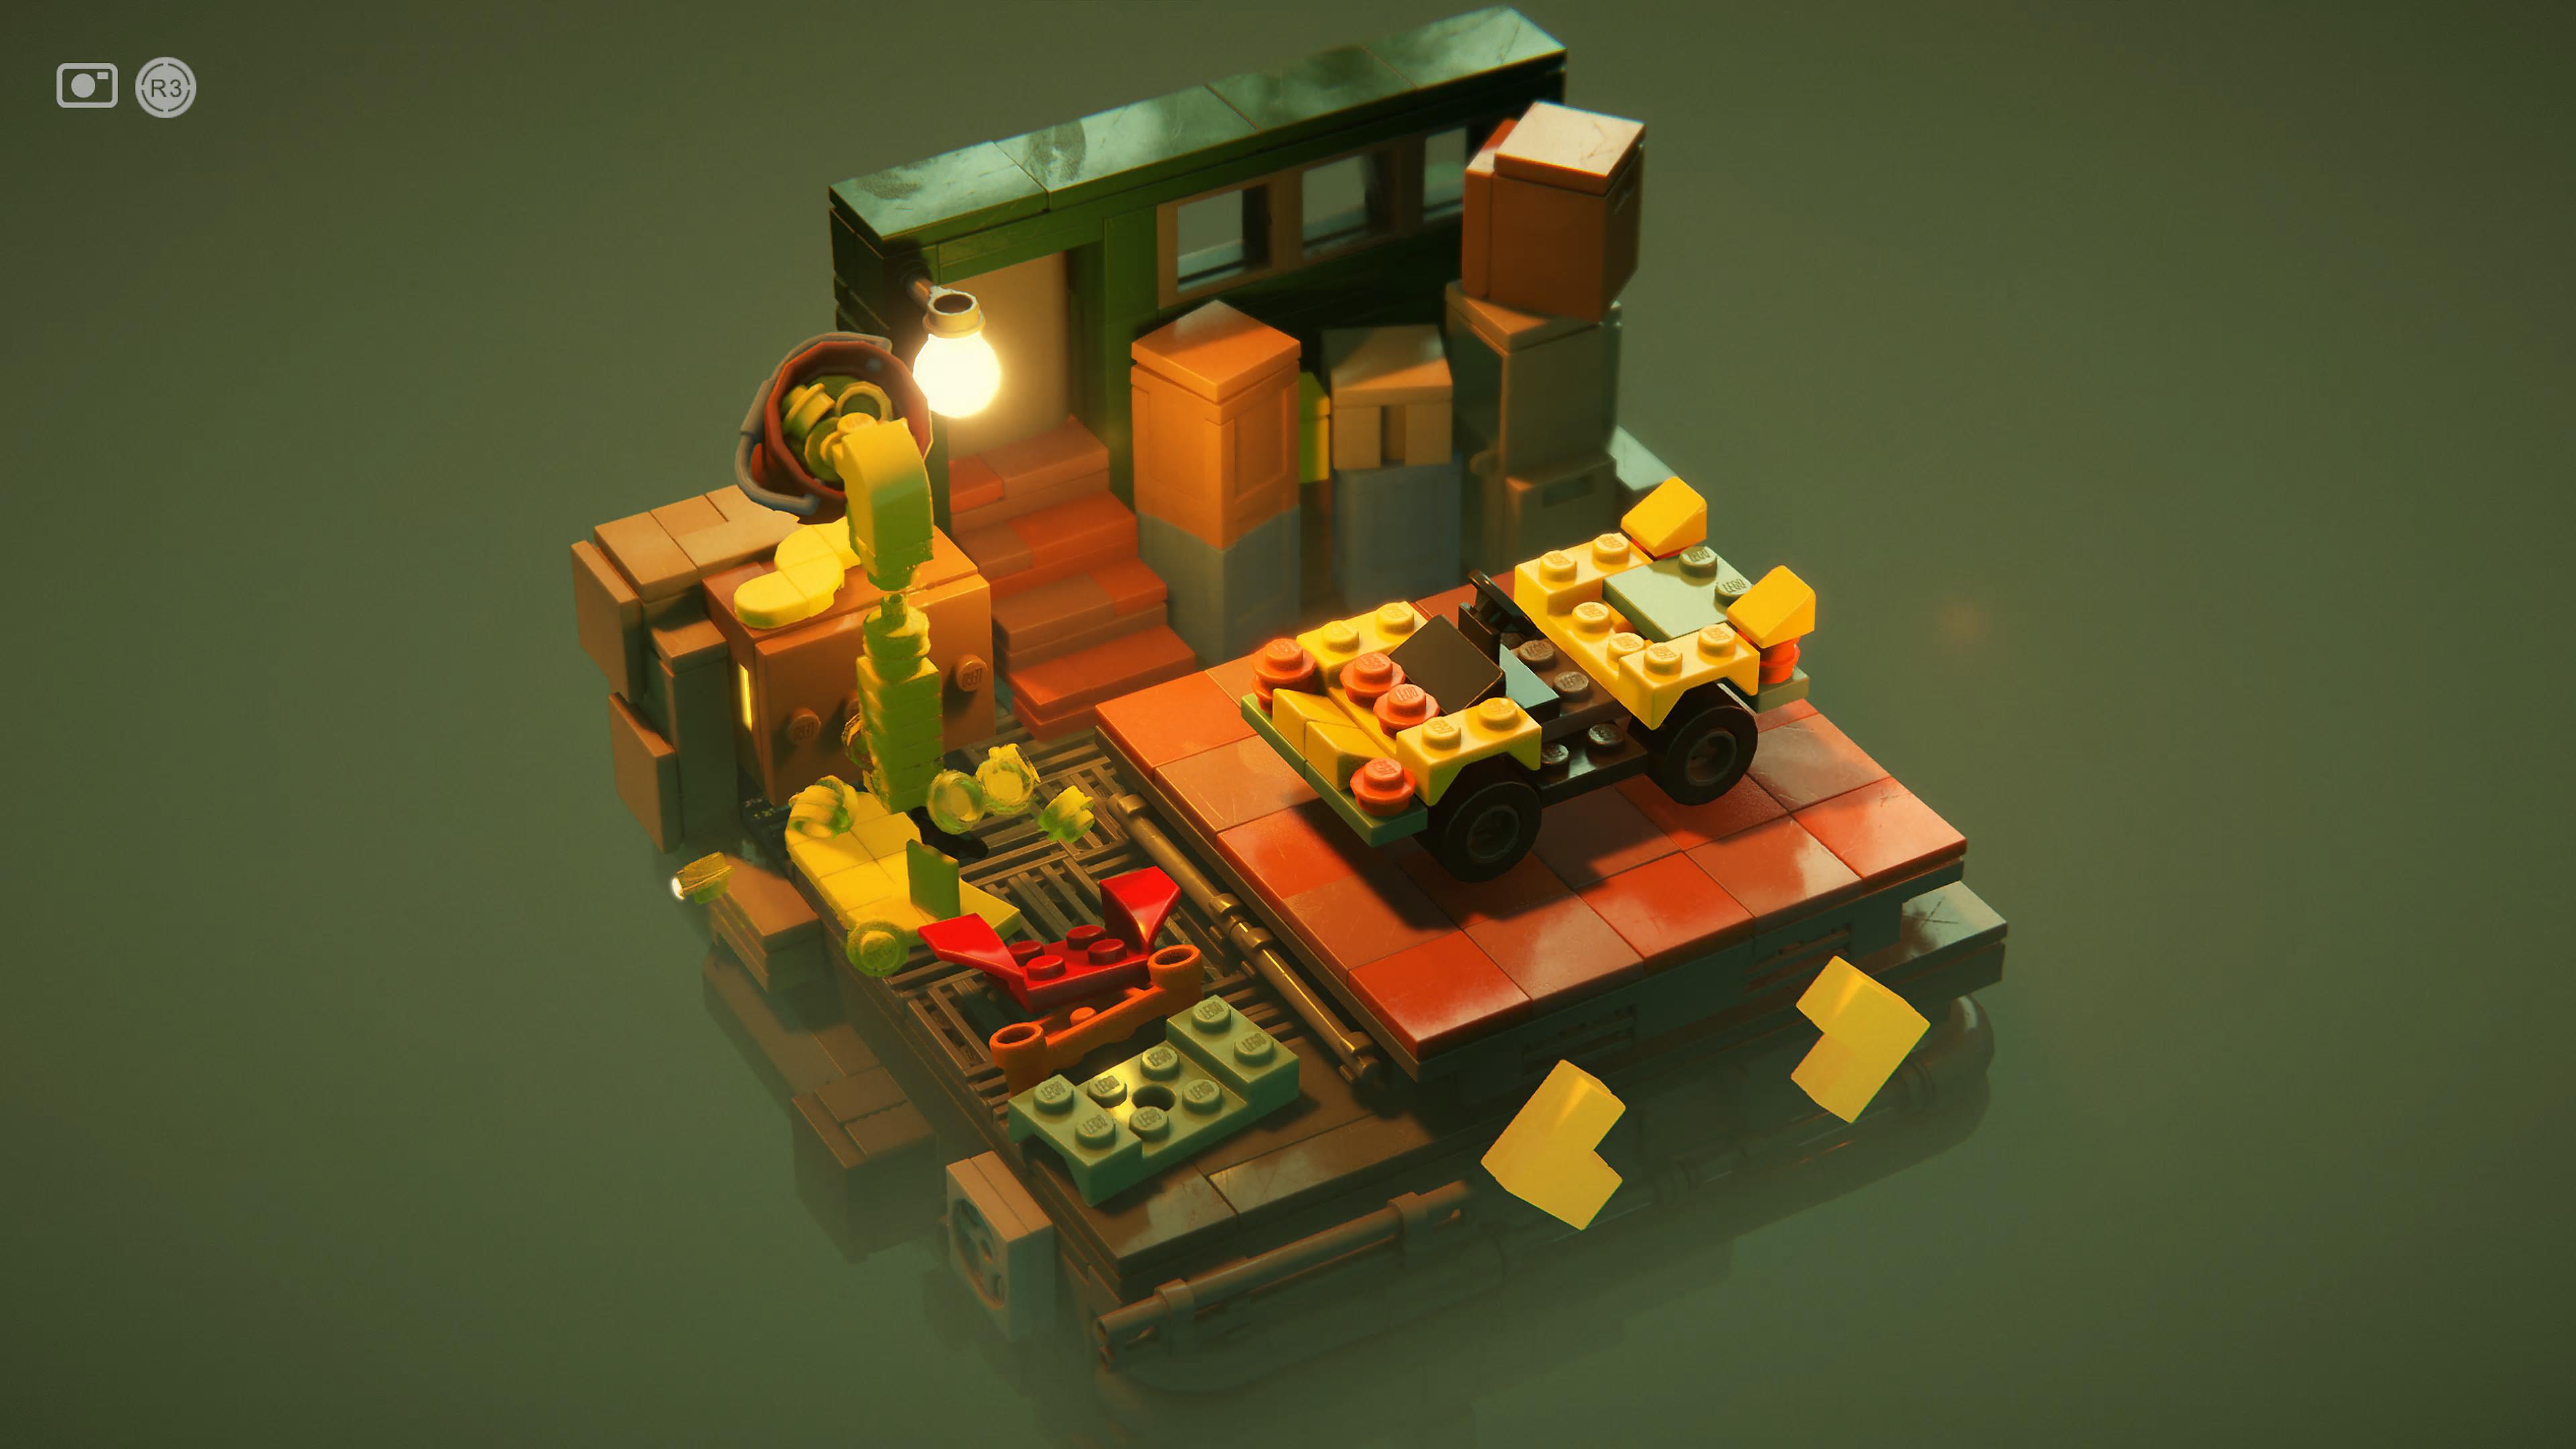 LEGO Builder's Journey 스크린샷, LEGO 배경